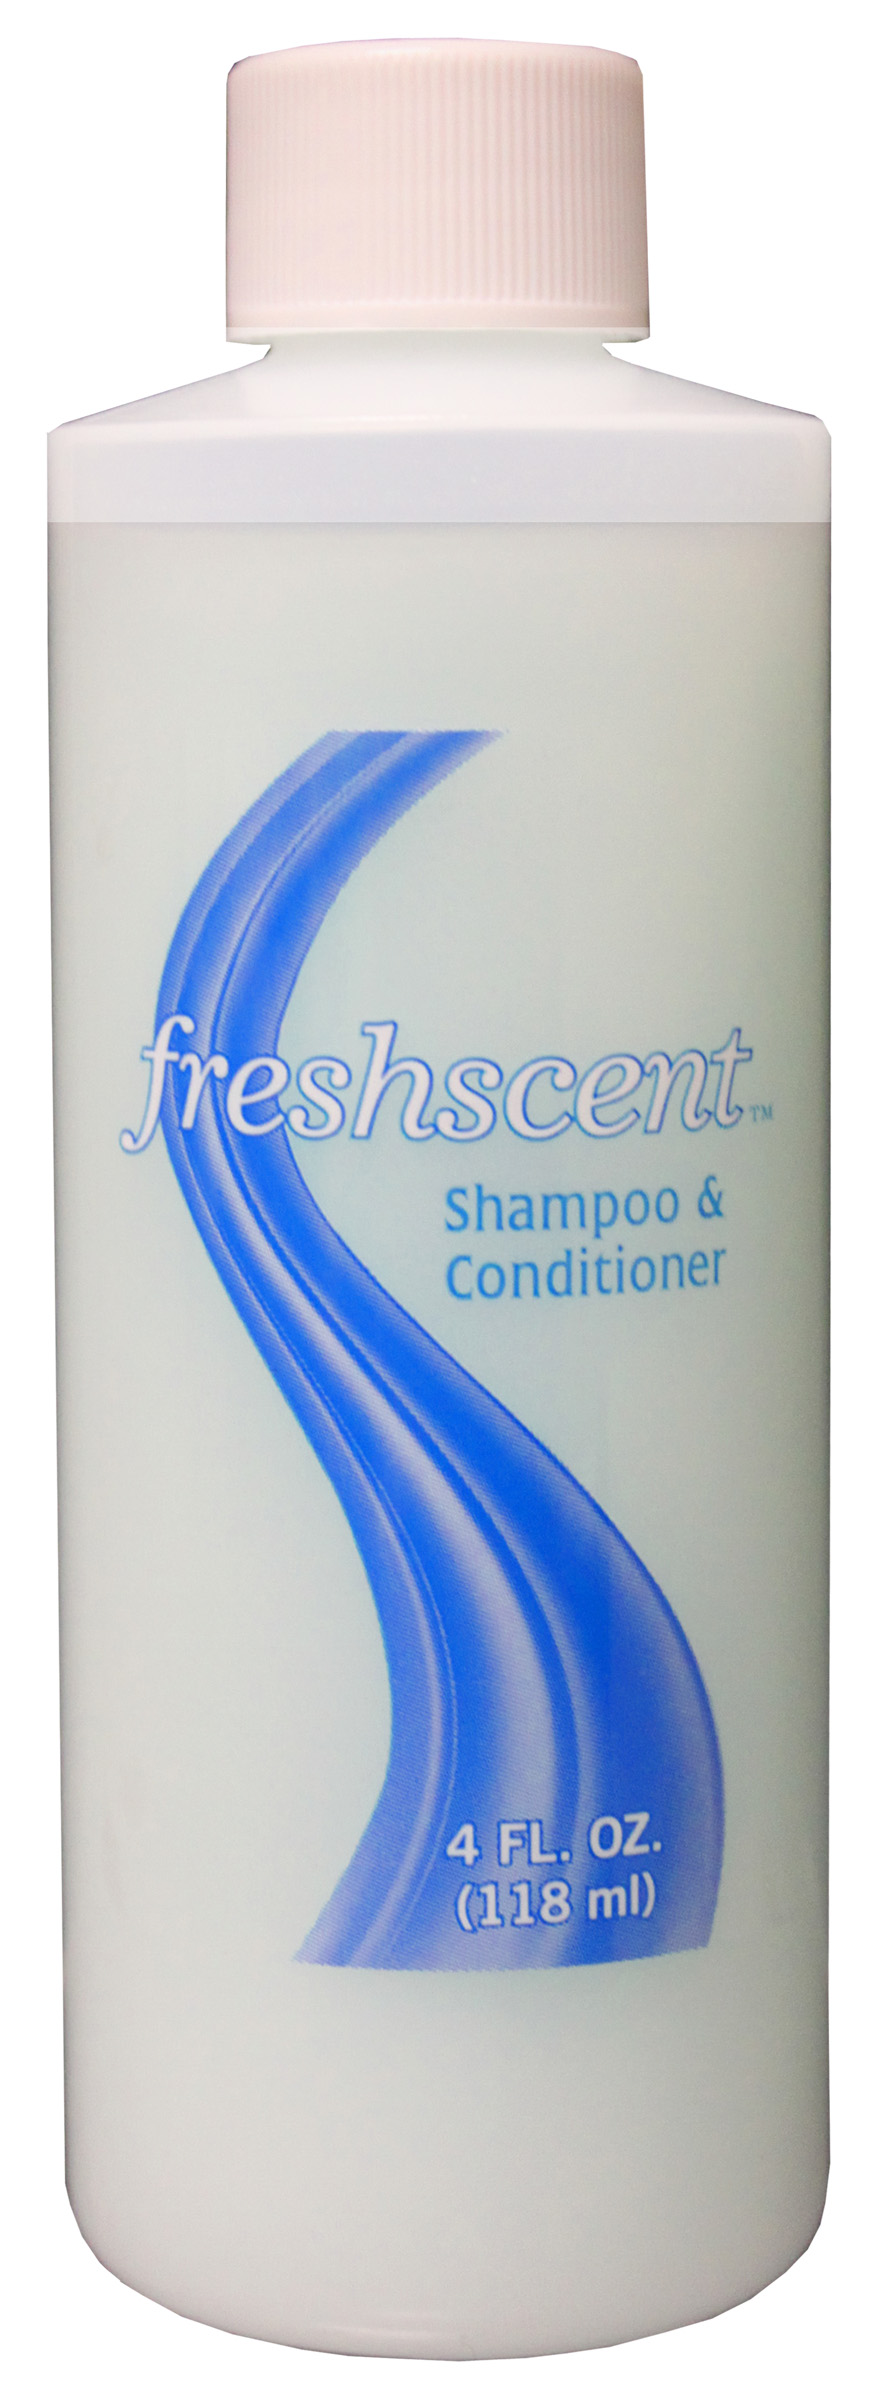 Freshscent 4 oz. Shampoo Plus Conditioner